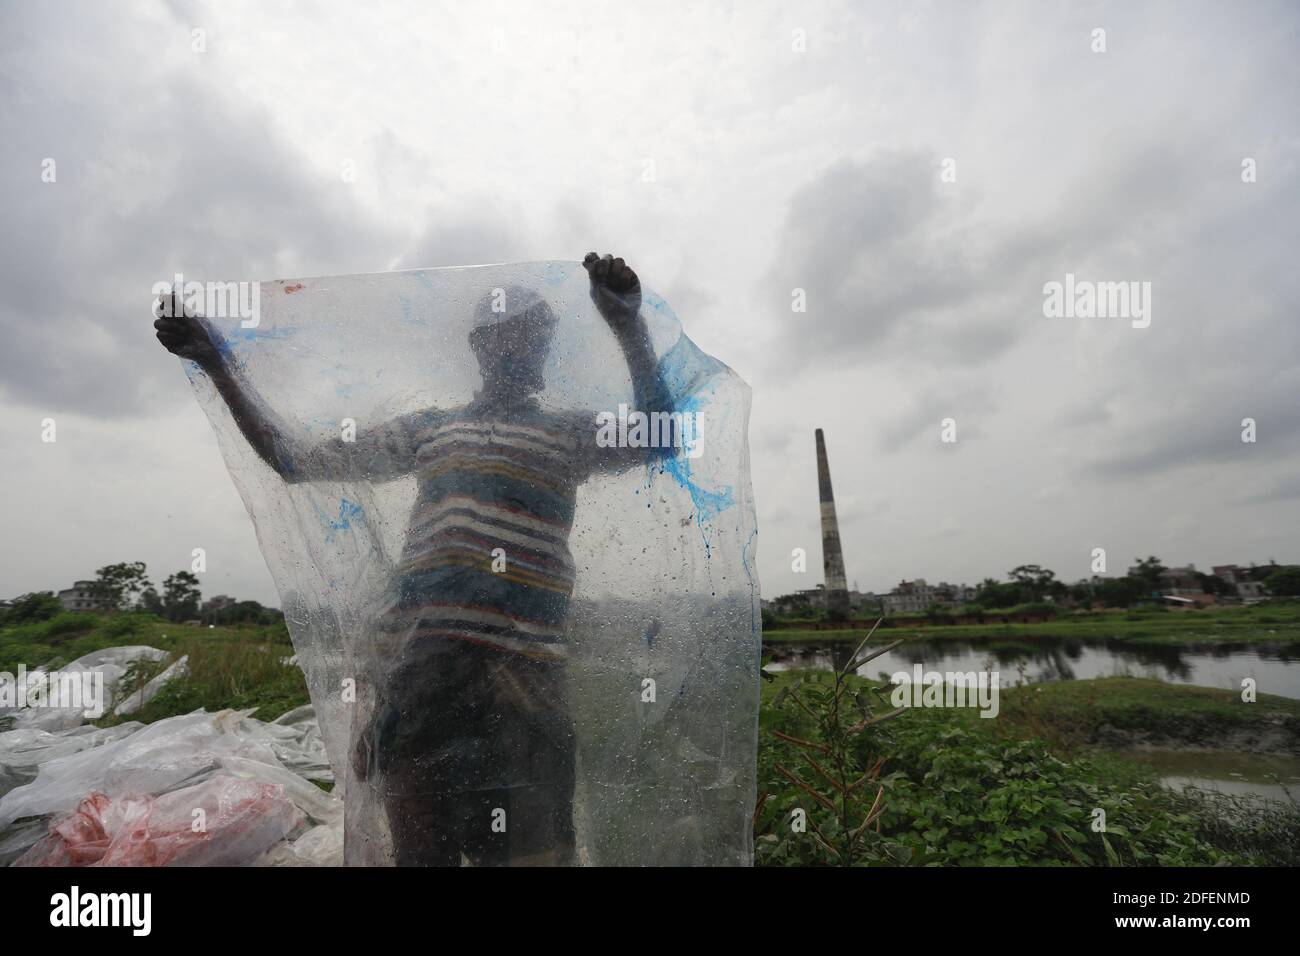 Un bangladais sèche les déchets de plastique après les avoir lavés dans l'eau de la rivière Turag à Tongi, près de Dhaka, au Bangladesh, le 9 juillet 2020. Photo de Kanti Das Suvra/ABACAPRESS.COM Banque D'Images